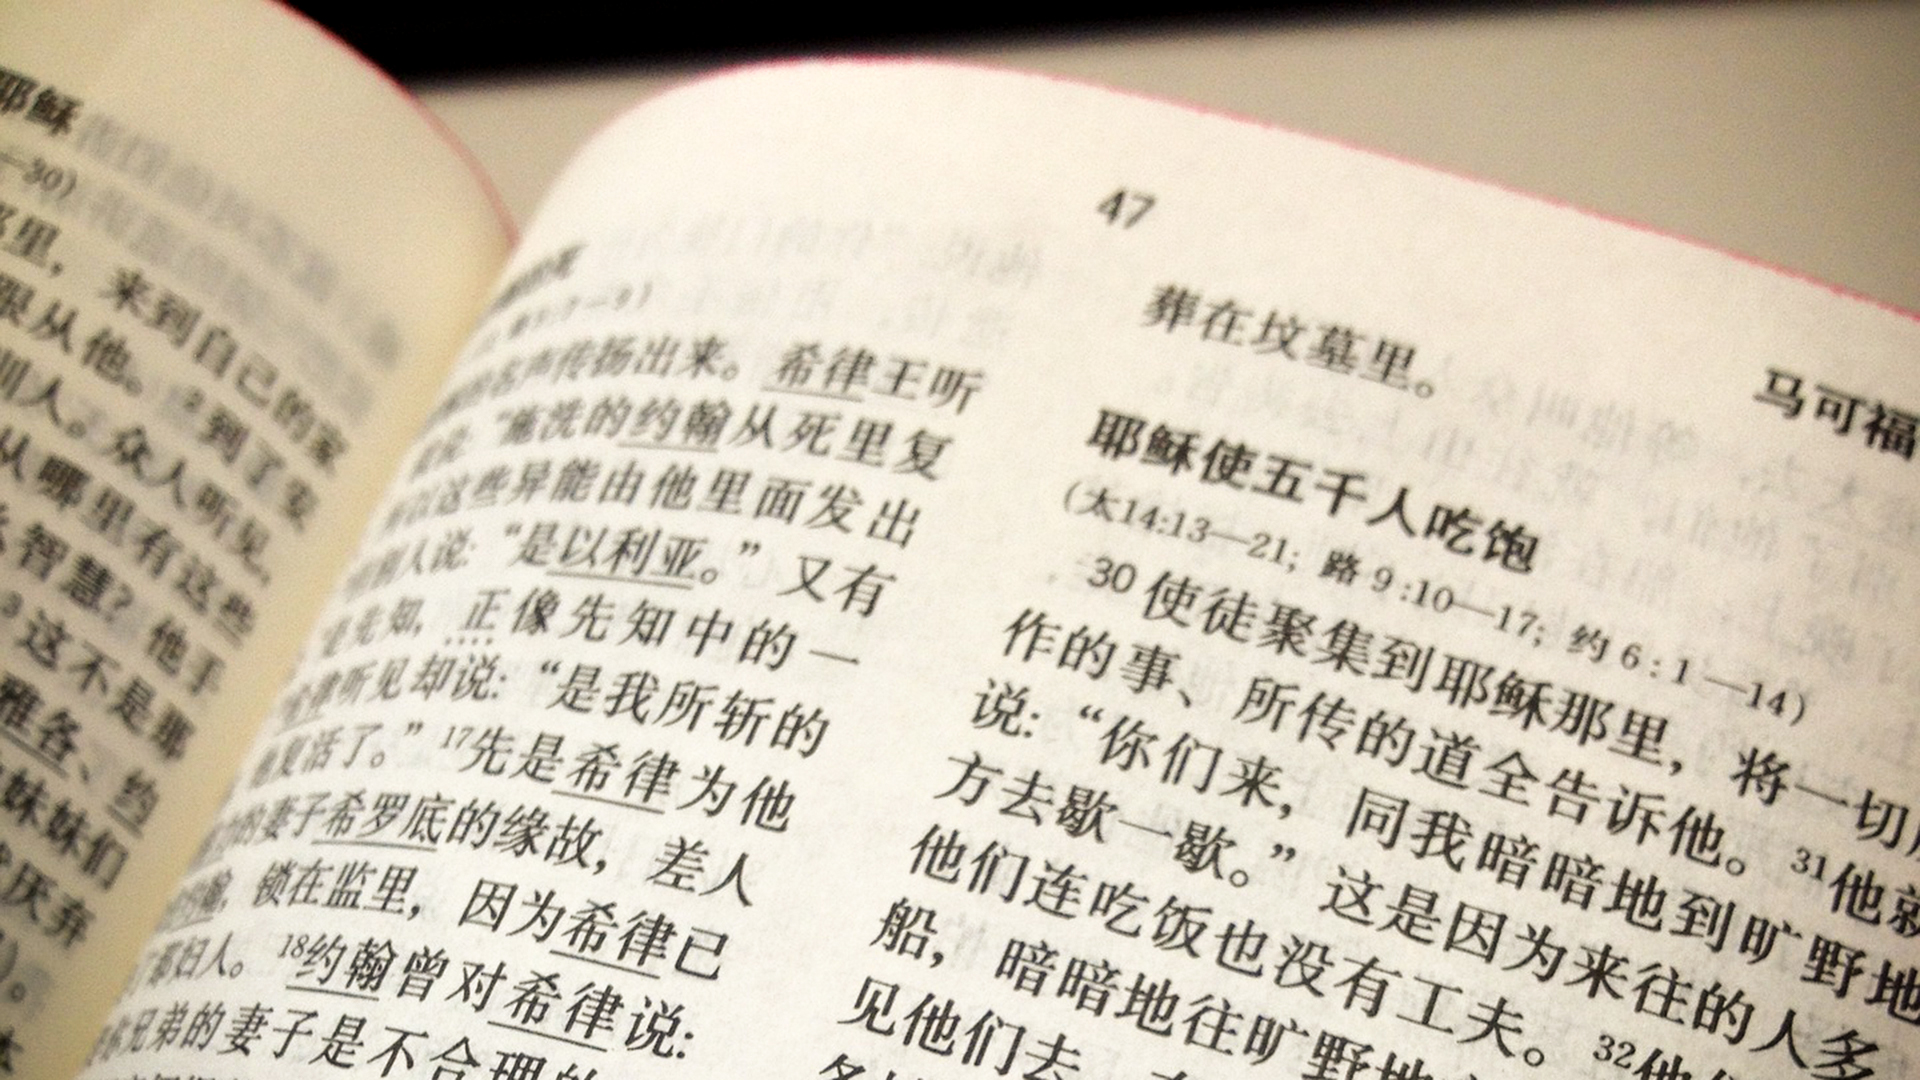 La mesure gouvernementale vise à limiter l'influence du christianisme en Chine  | © Pixabay